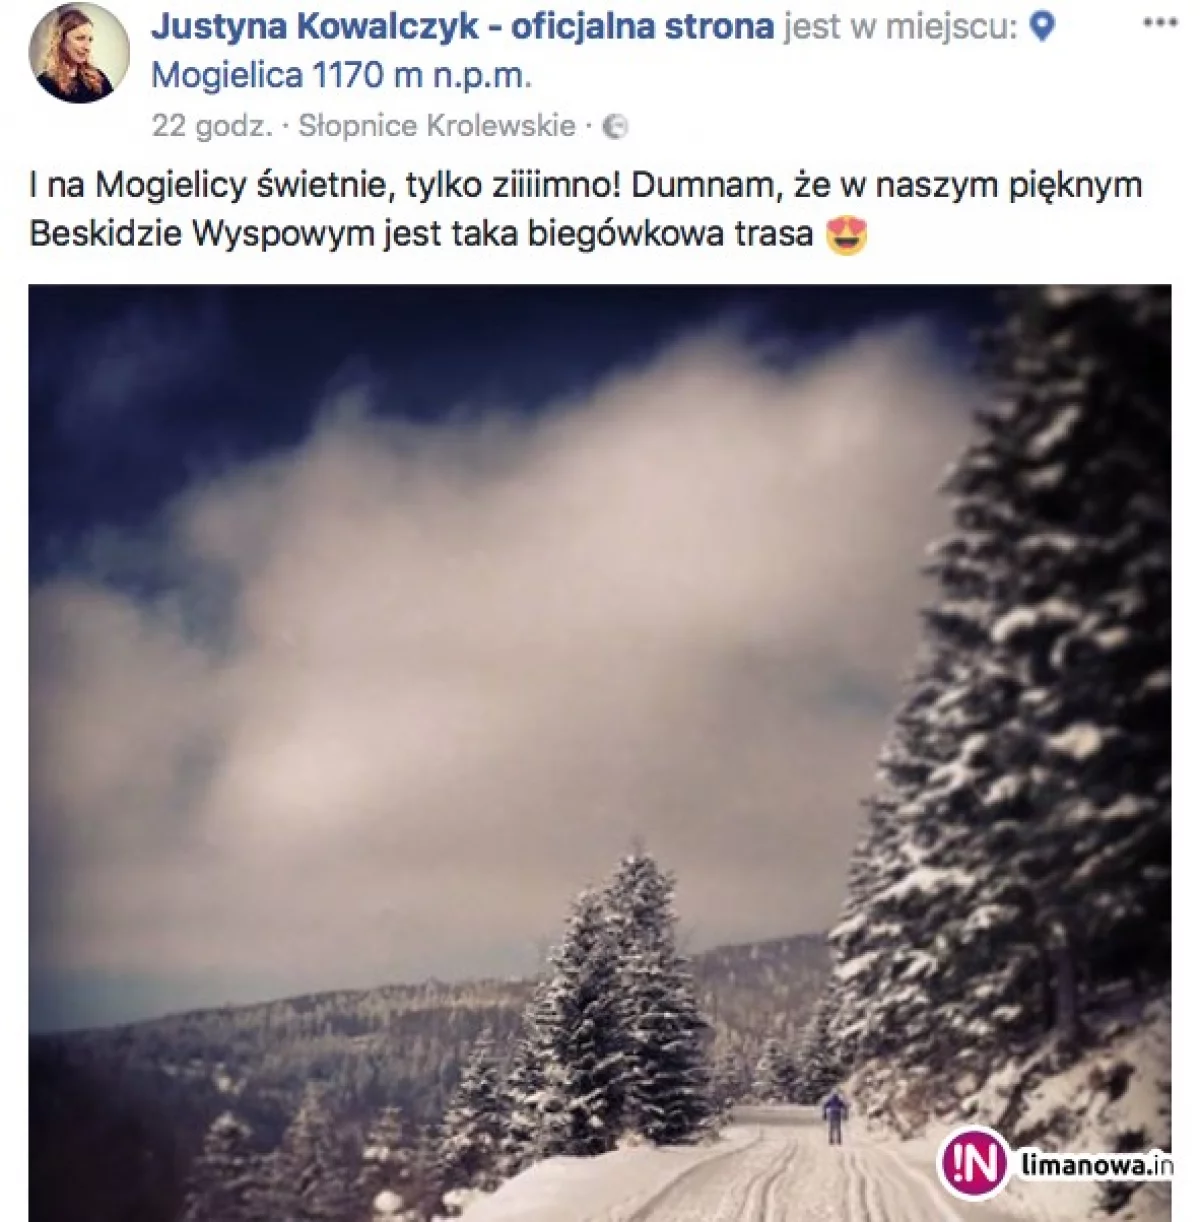 Justyna Kowalczyk dumna z trasy w Beskidzie Wyspowym